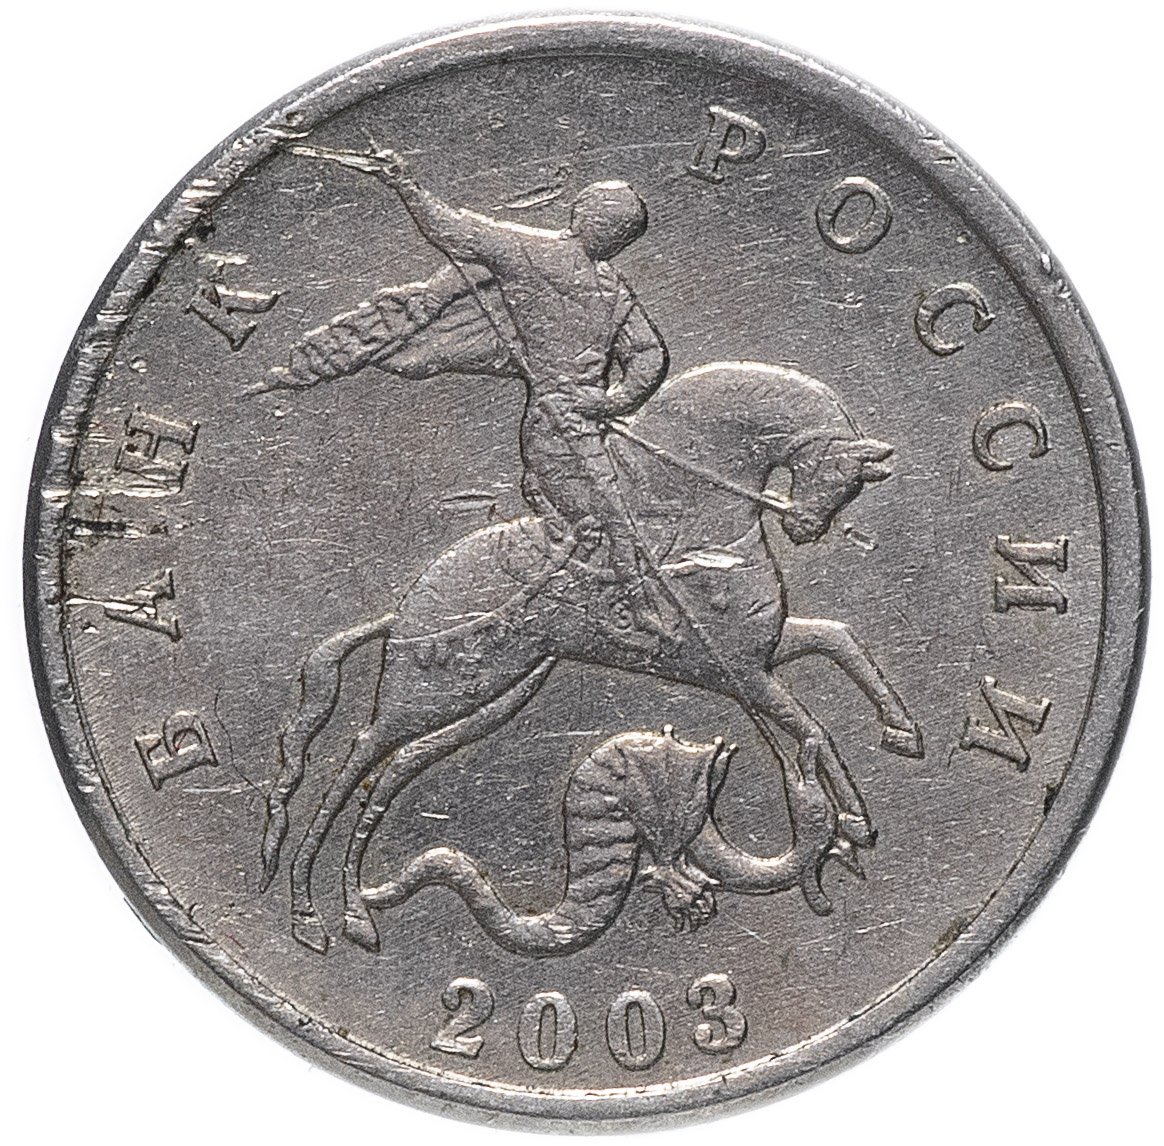 1 Копейка 2003 м